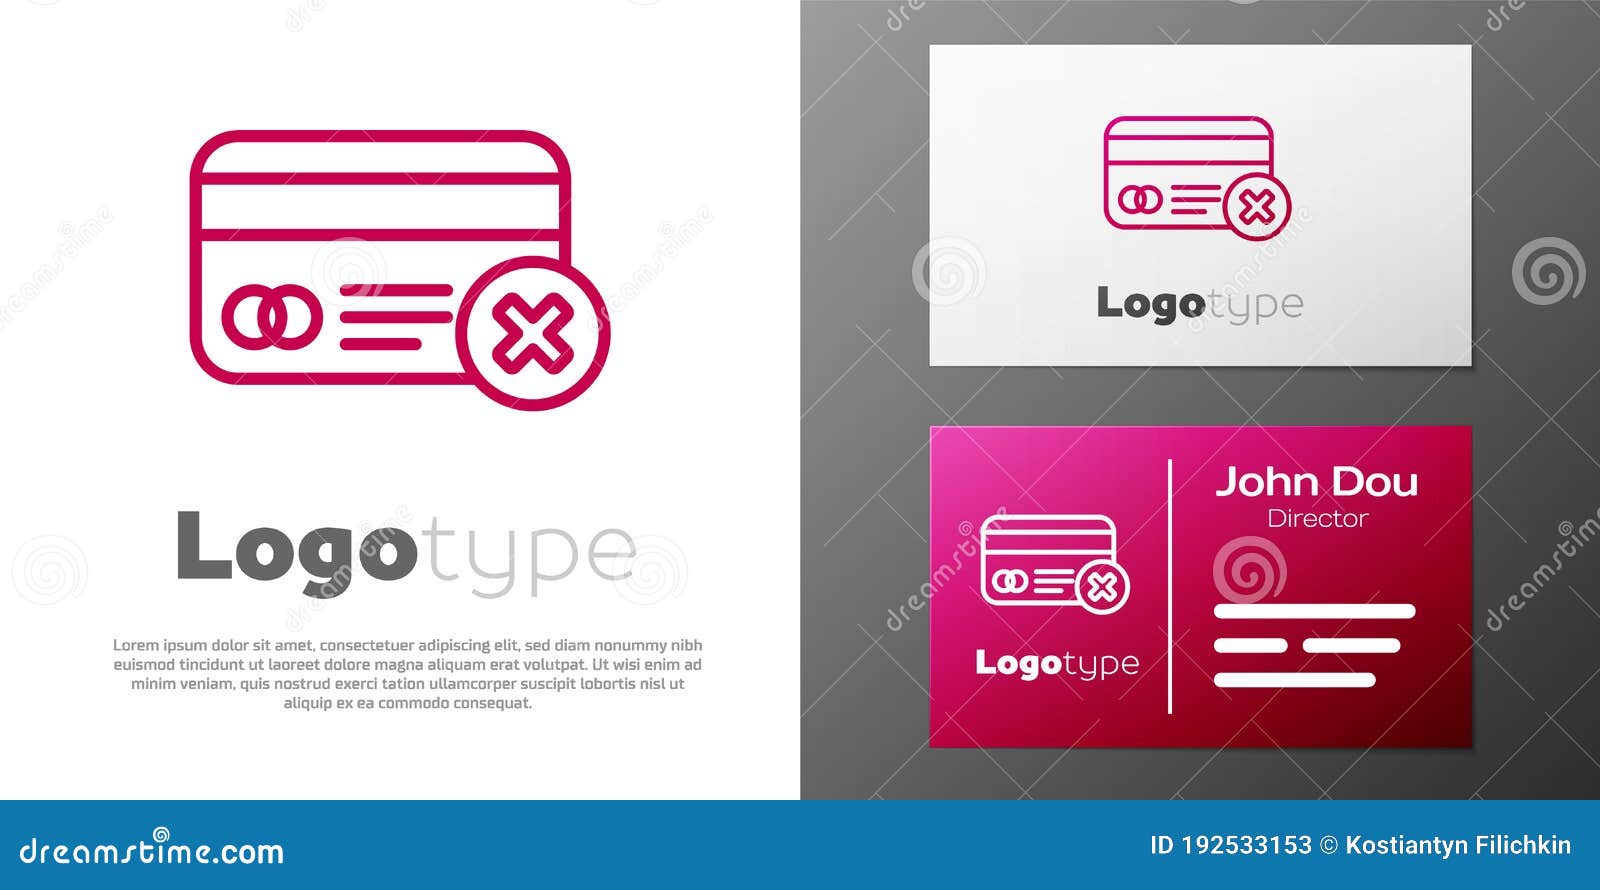 Logotype là biểu tượng đặc trưng cho các loại thẻ tín dụng, thể hiện tính chuyên nghiệp và đẳng cấp. Nếu bạn là người đam mê công nghệ và muốn tìm hiểu thêm về các loại thẻ thanh toán, hãy chọn Logotype và đón nhận những thông tin hữu ích nhất.